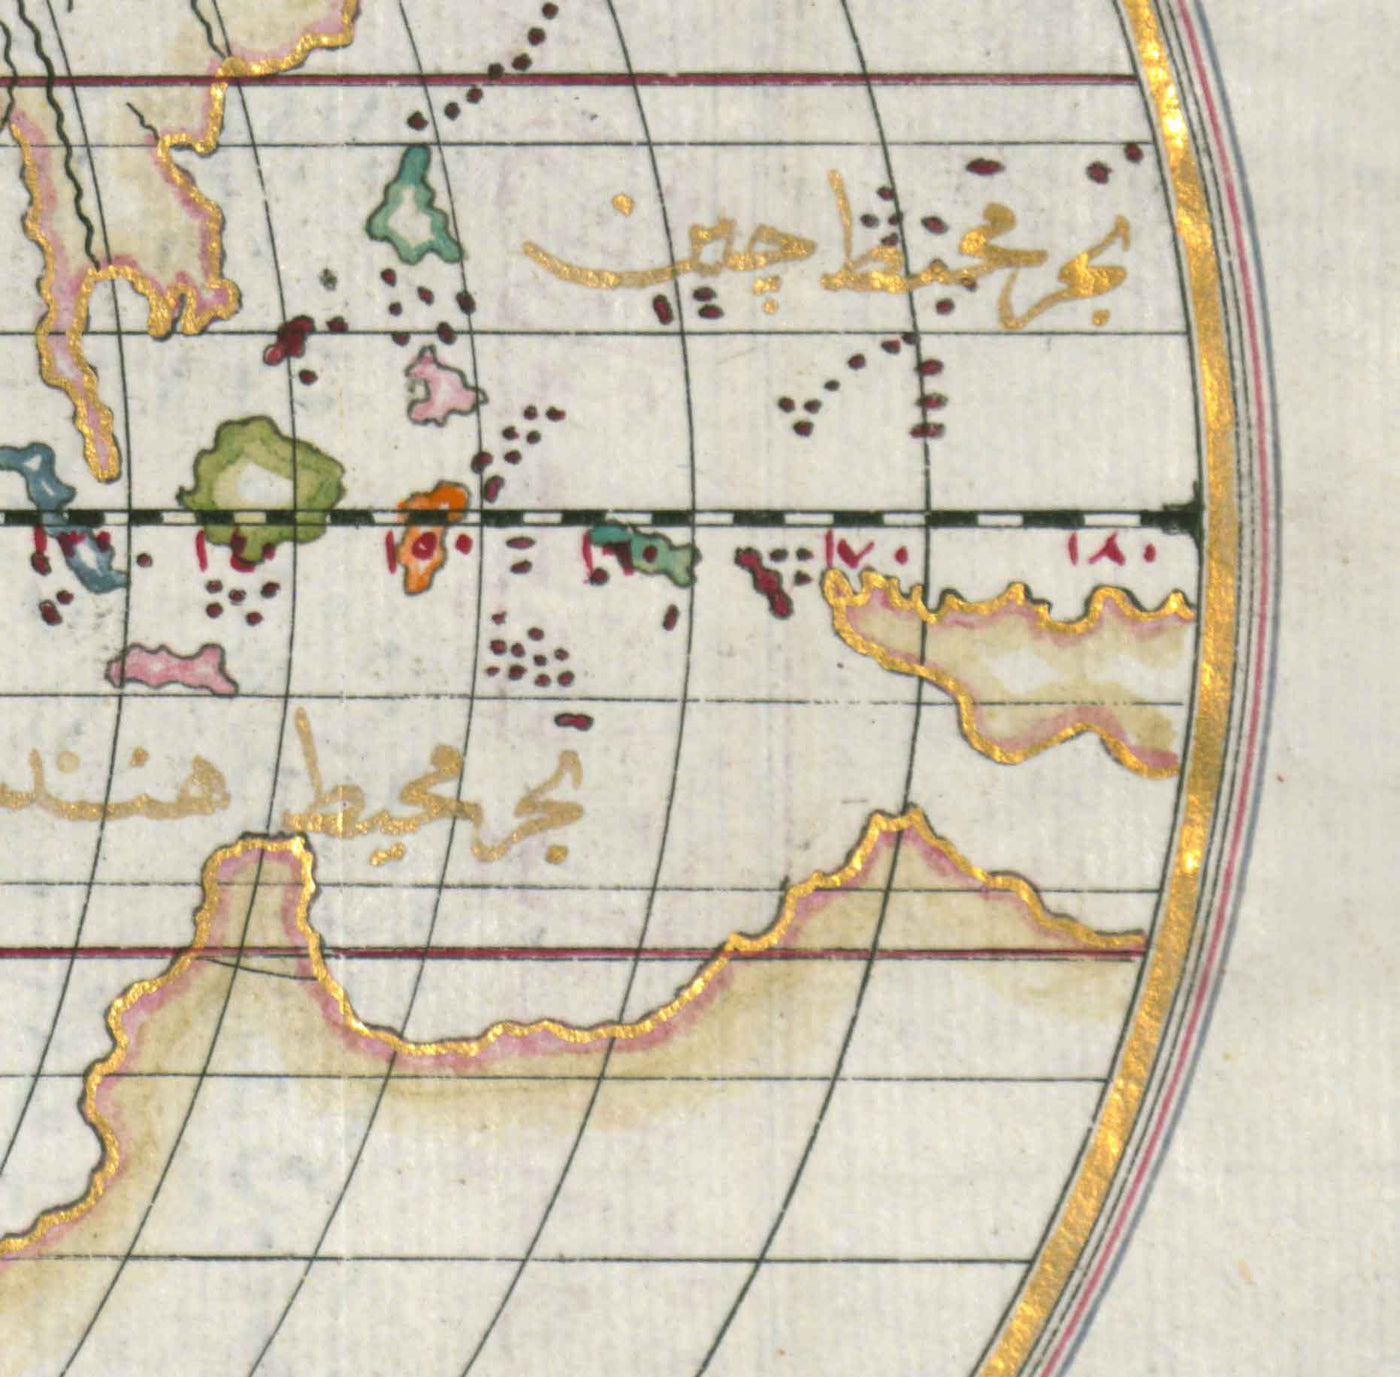 Alte arabische Weltkarte von Piri Reis aus dem Jahr 1525 - Nordamerika, Südamerika, Europa, Afrika, Asien